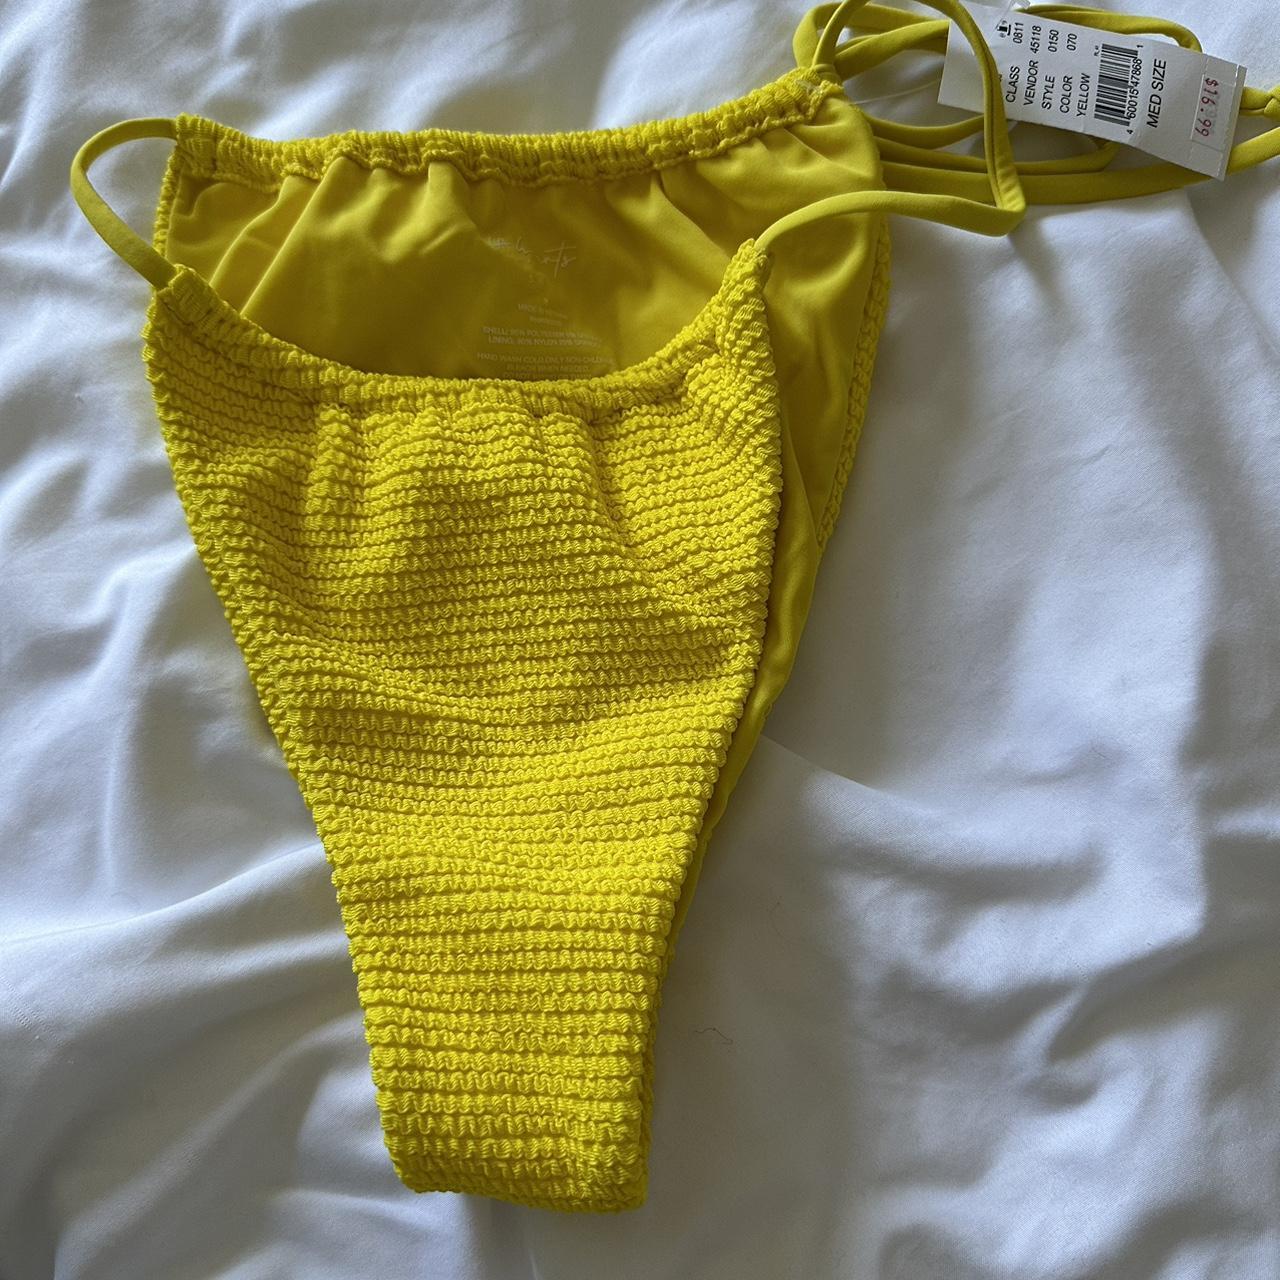 Pacsun swimsuit bottom size m - Depop